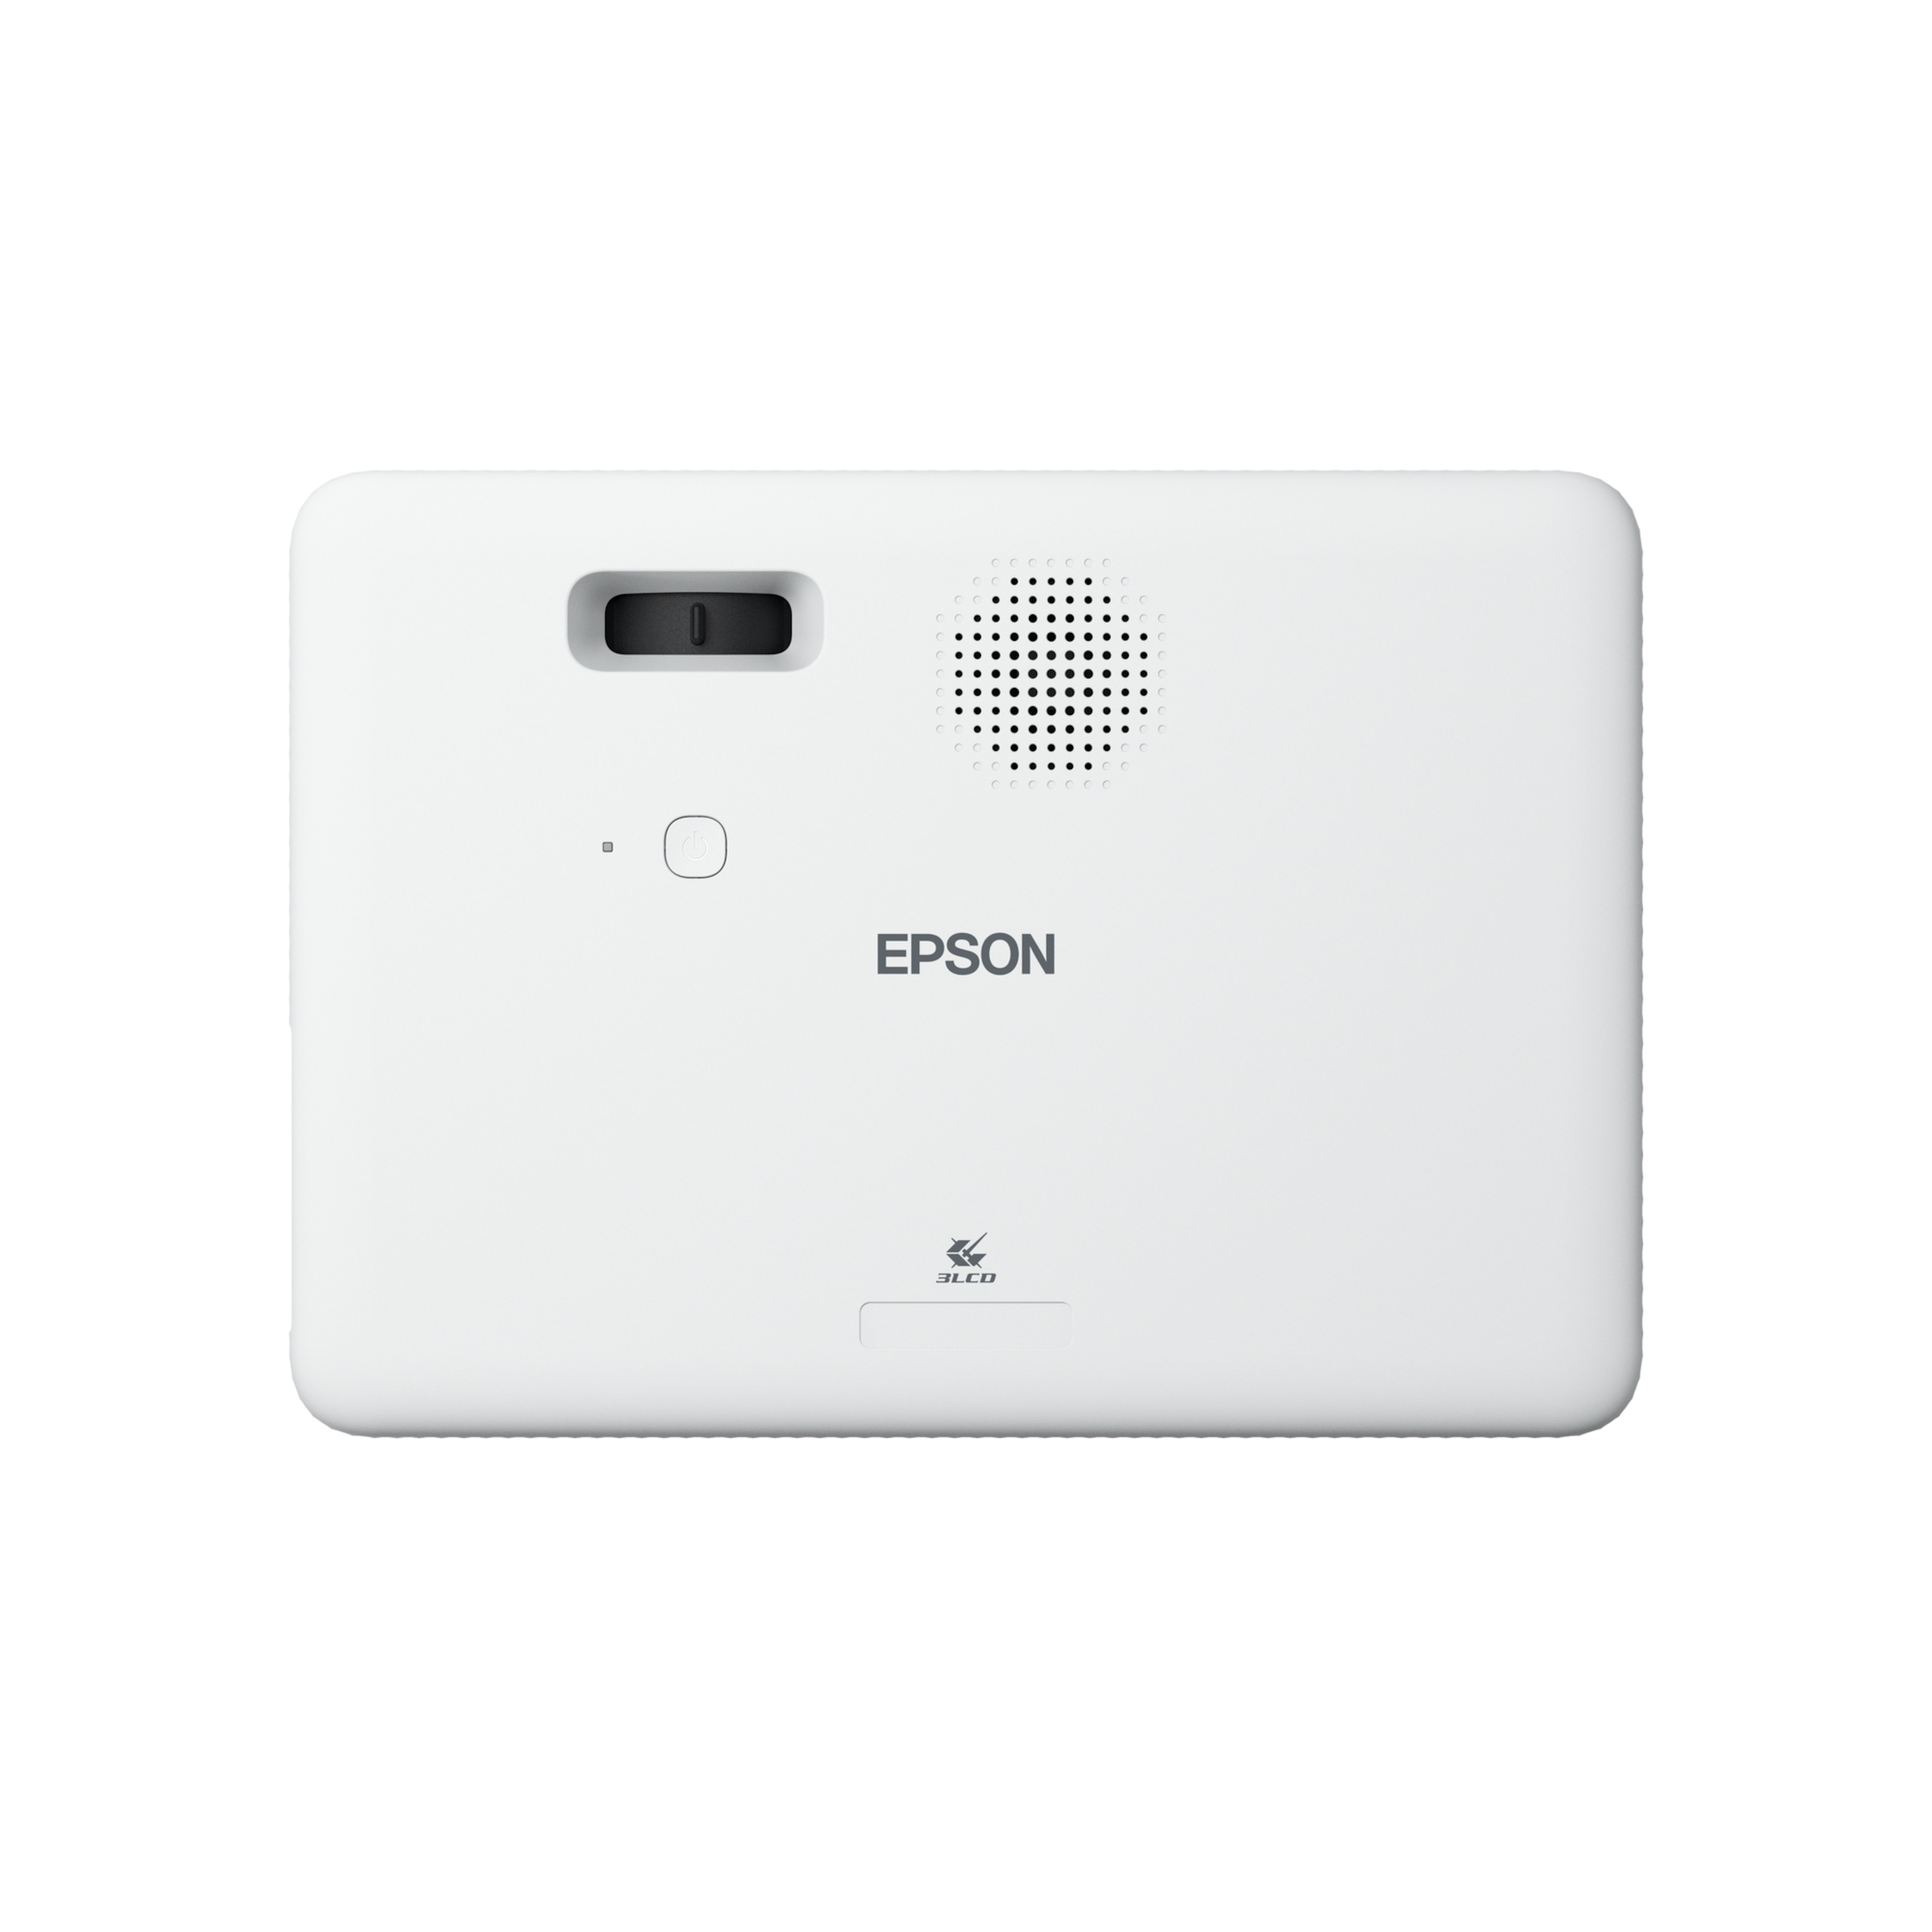 EPSON CO-FH01 Beamer, 3LCD-Technologie, RGB-Flüssigkristallverschluss, 391-Zoll-Projektion an Wand oder Decke, Full HD, Streaming